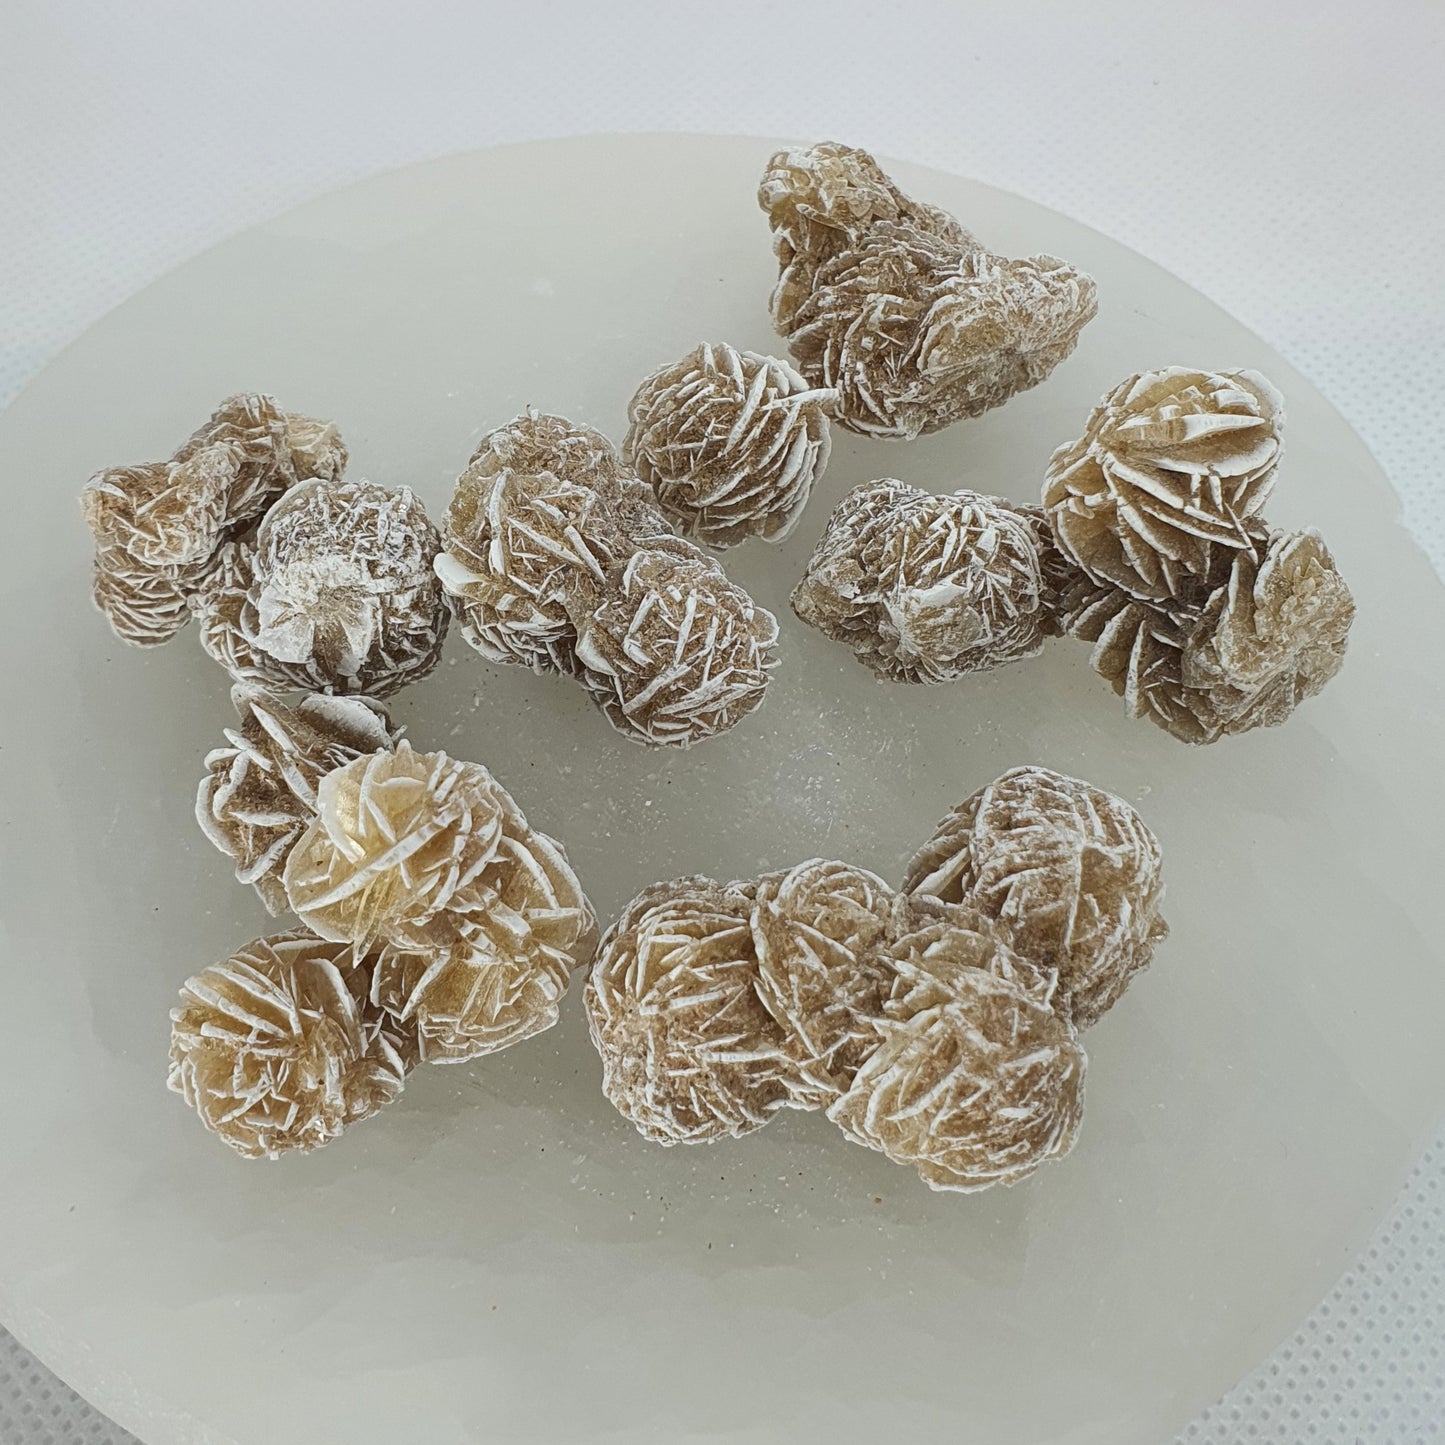 Crystals - Desert Rose (Selenite) - (Small)